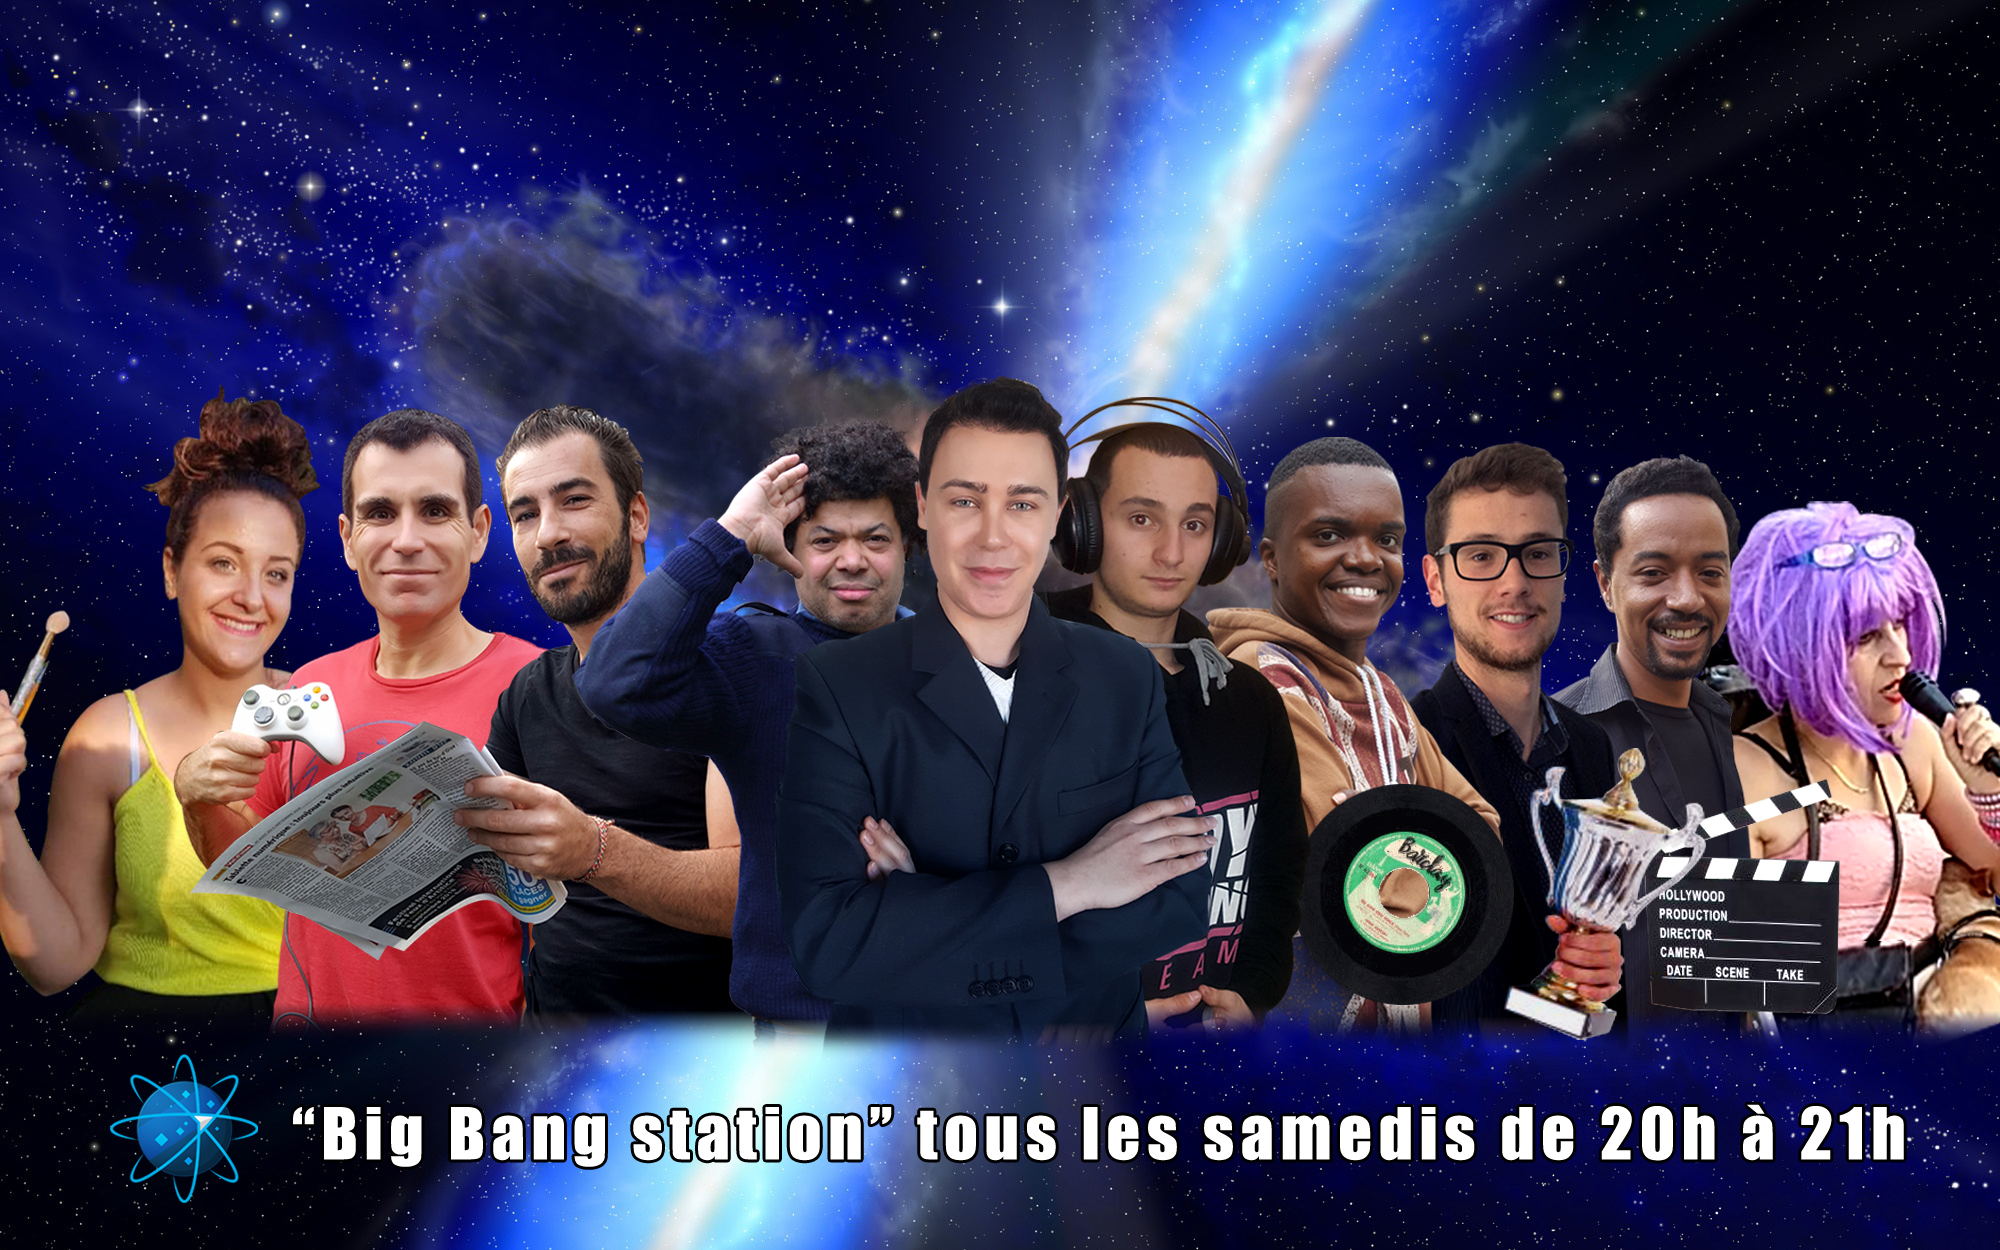 Une nouvelle Big Bang team : Marie, Olivier, Nono, Petit Manu, Didier, Dany, Kevin, Pierre, Luis et Sophie